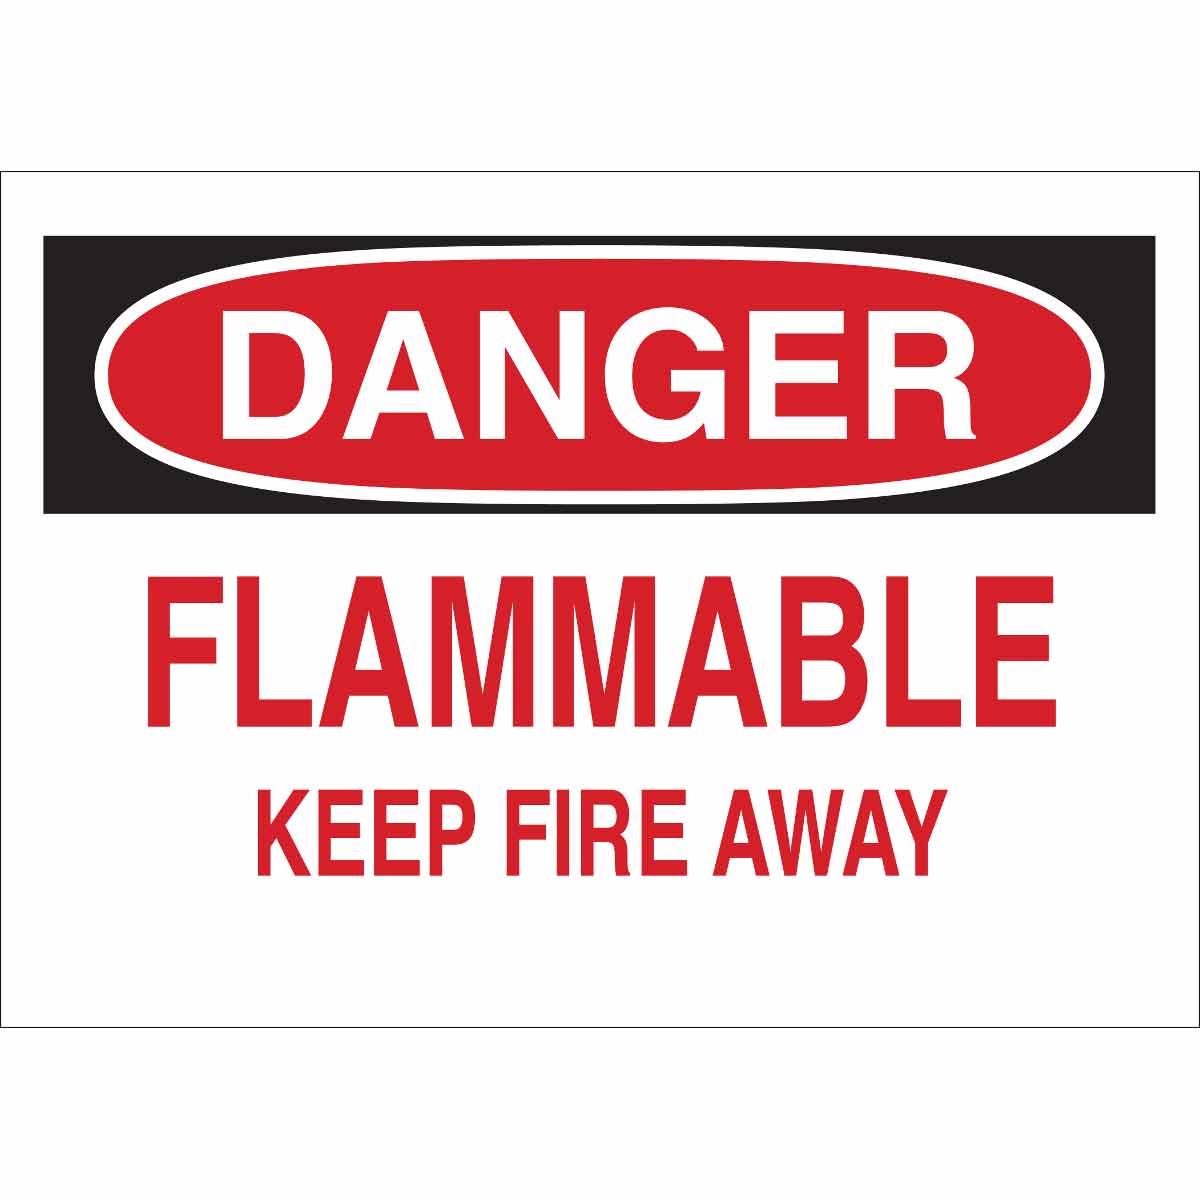 Keep in fire x in. Keep away from Fire одежда. Danger keep away. Штампы keep away from Fire. Keep away from Fire одежда производитель Страна производитель.